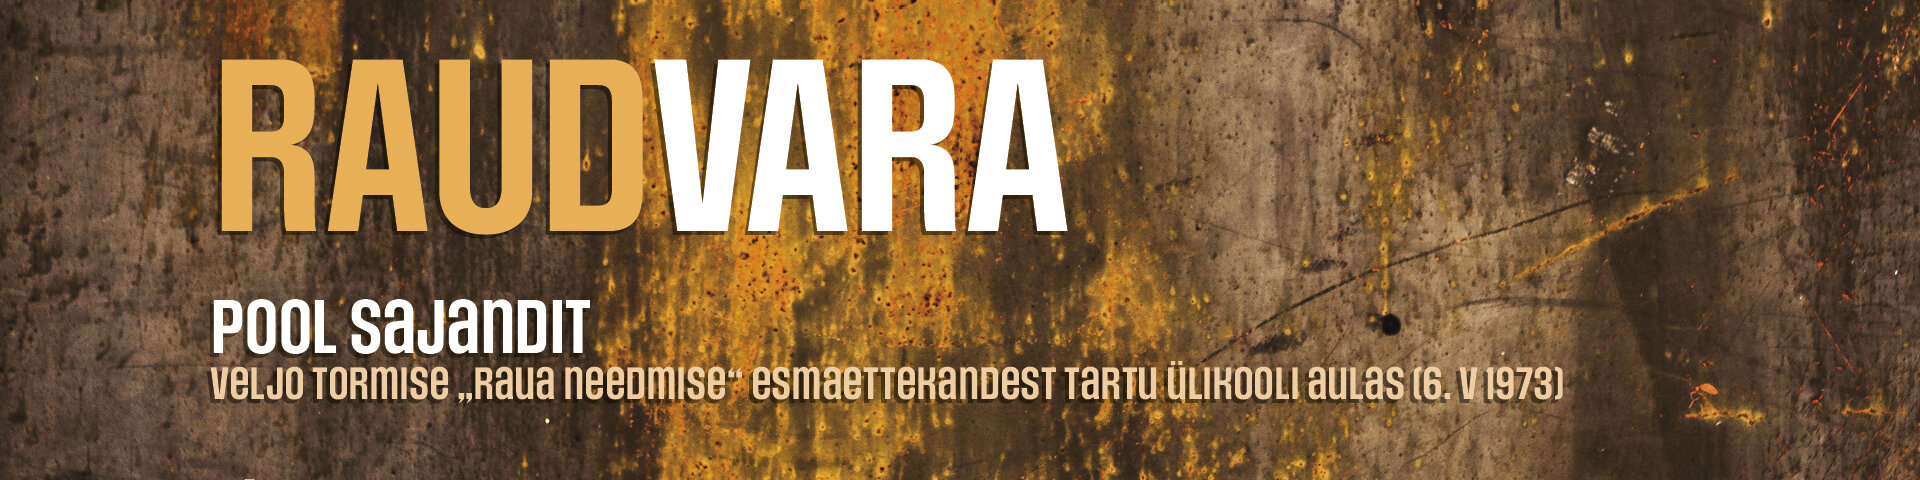 Plakat kirjaga "Raudvara" roostemustrilisel taustal.